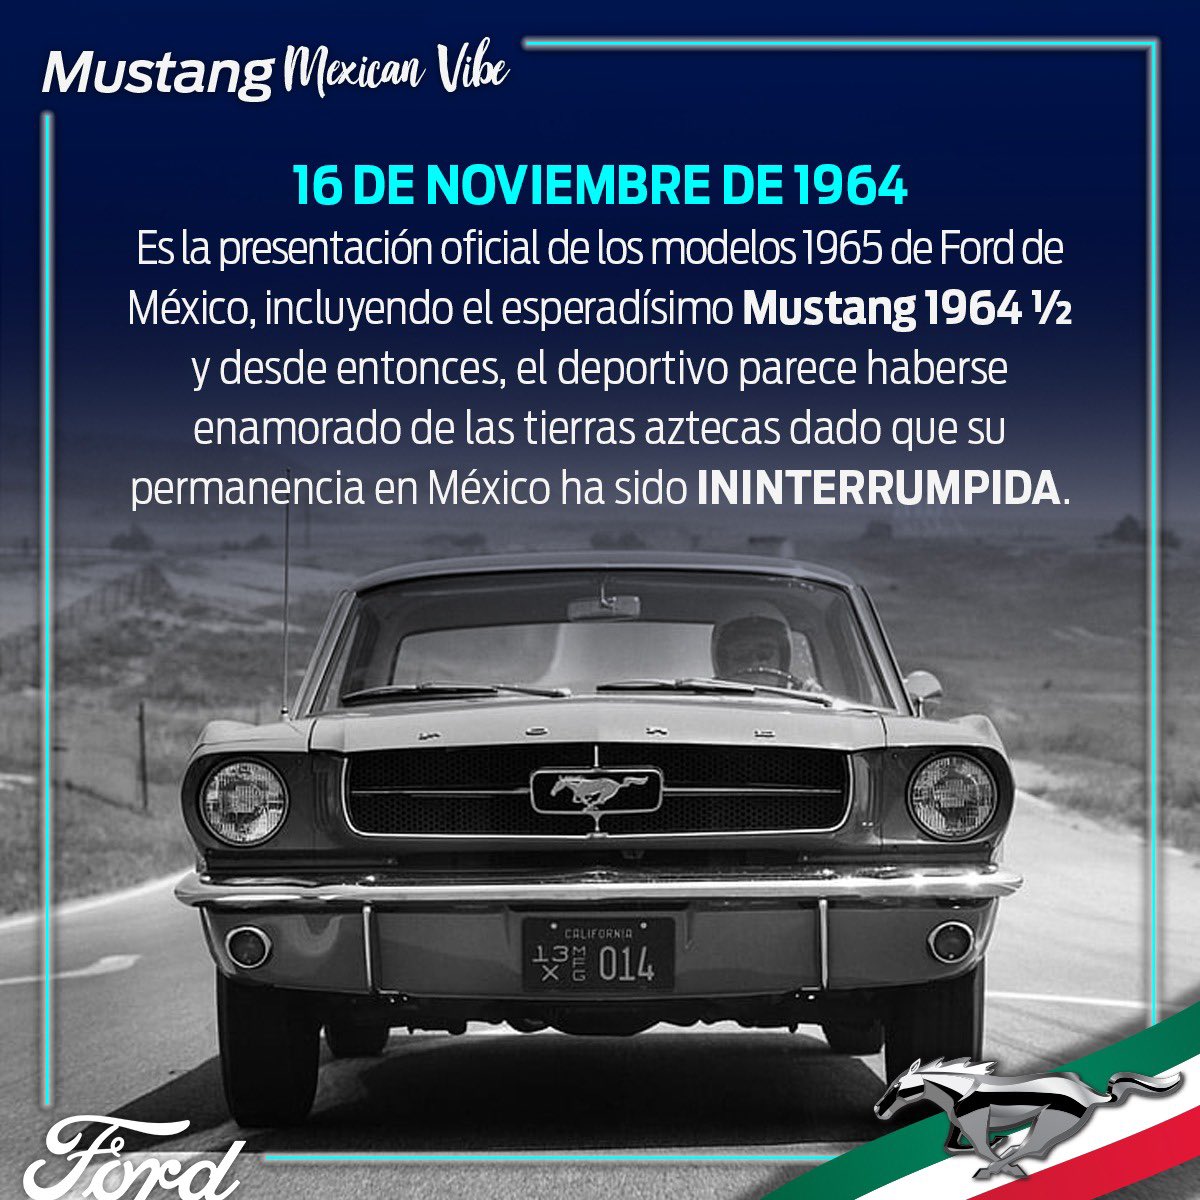 Los festejos de Mustang no terminan aún, les comparto algunos facts de Mustang en México #MustangWeek #FordMustang #MustangMexicanVibe #FordMustang #Mustang #MuscleCar